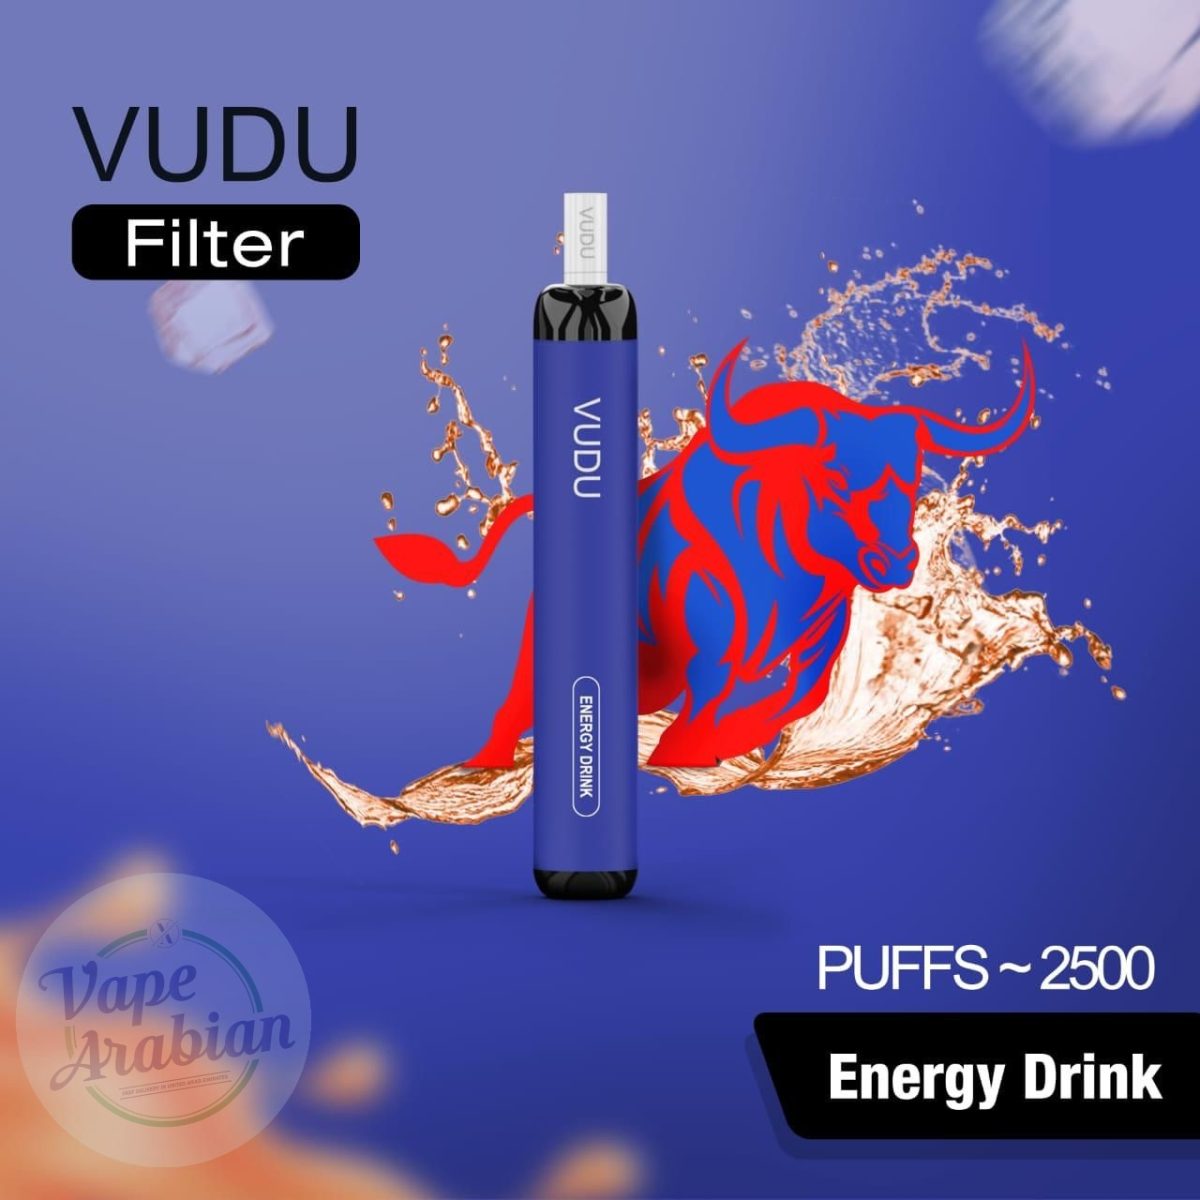 VUDU Filter 2500 Puffs Disposable Vape- Energy Drink